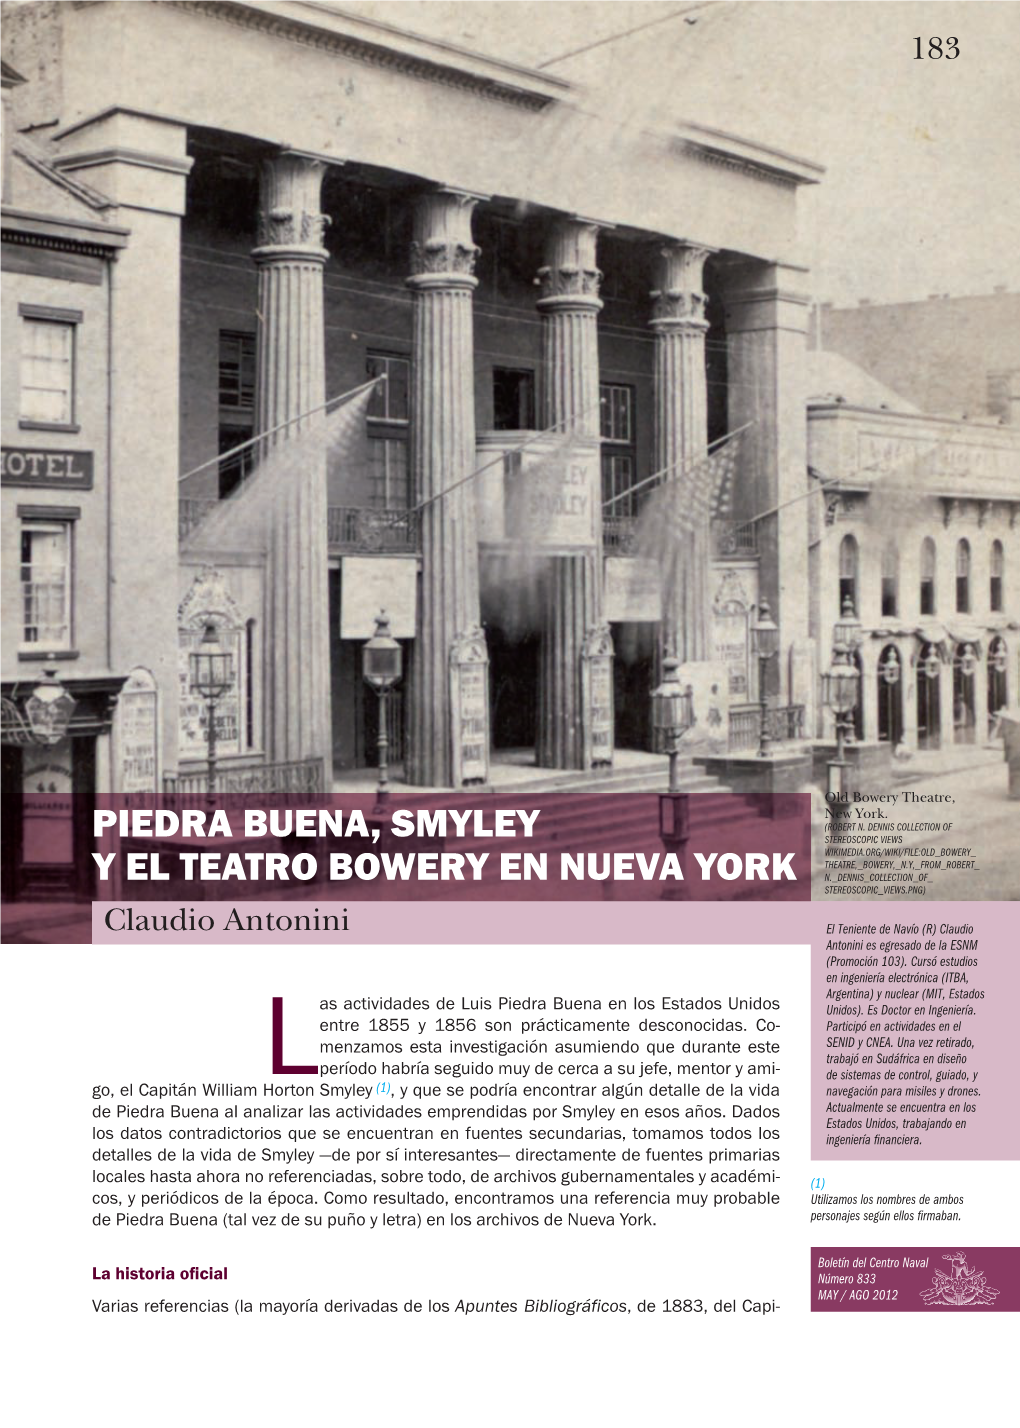 Piedra Buena, Smyley Y El Teatro Bowery En Nueva York